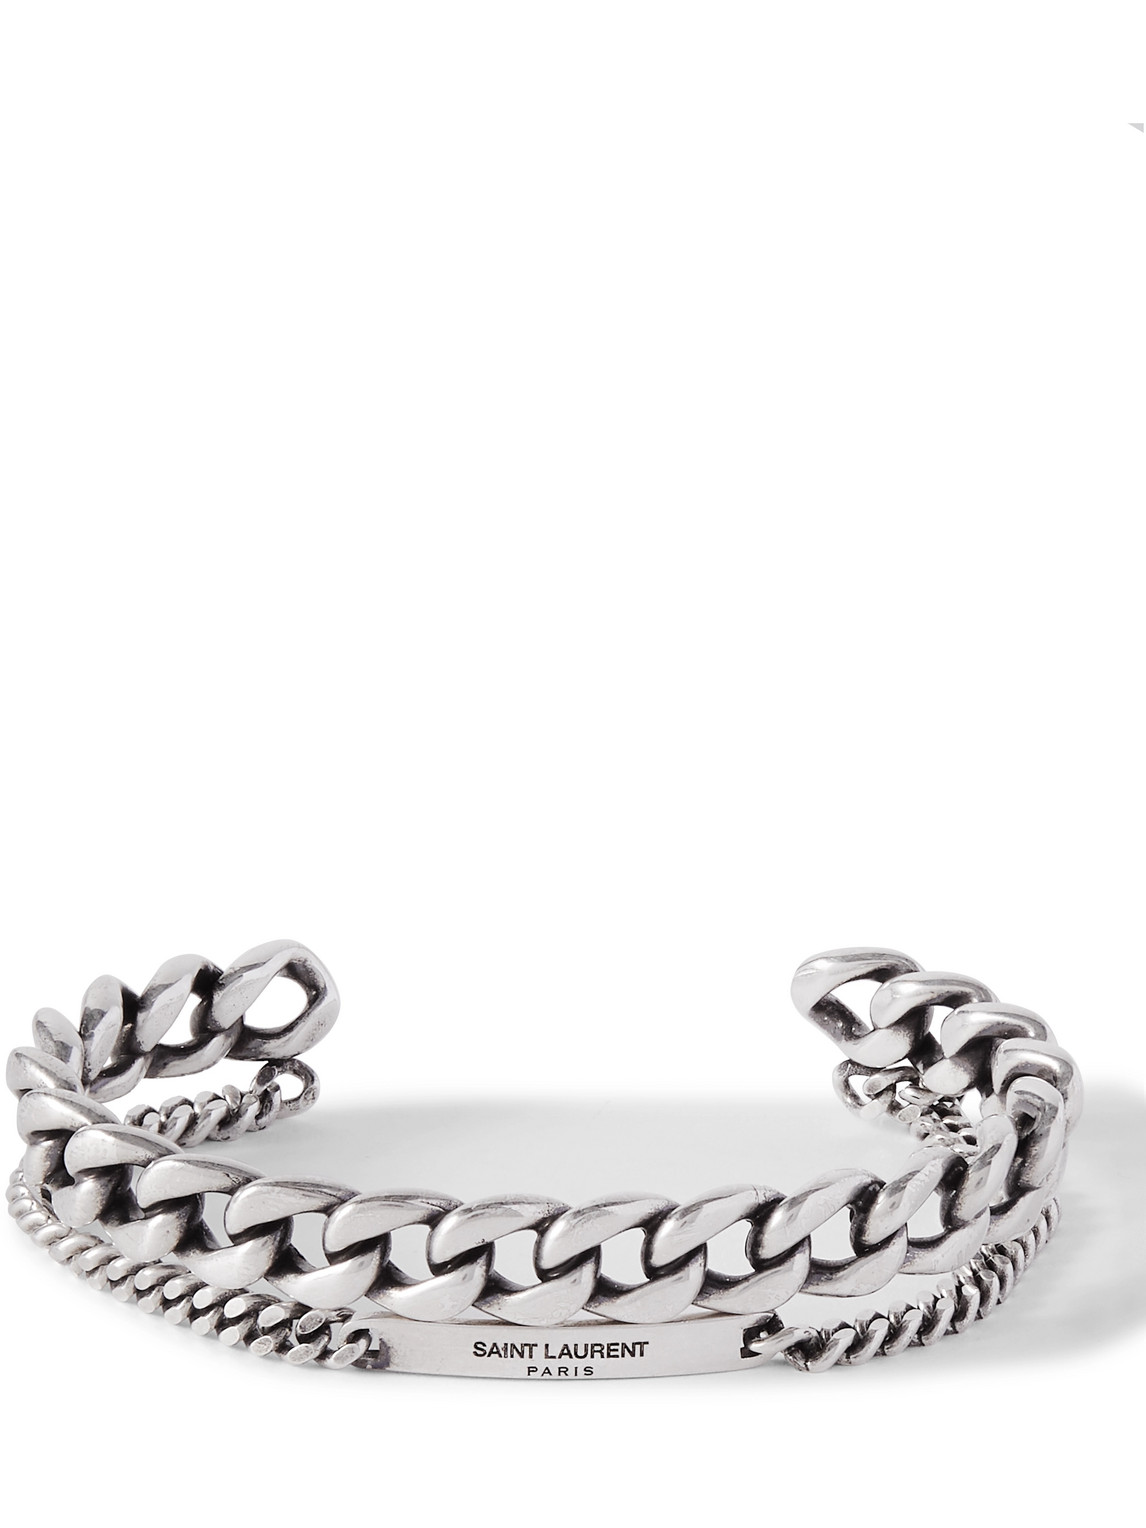 Saint Laurent Paris Monogram Cuff Bracelet